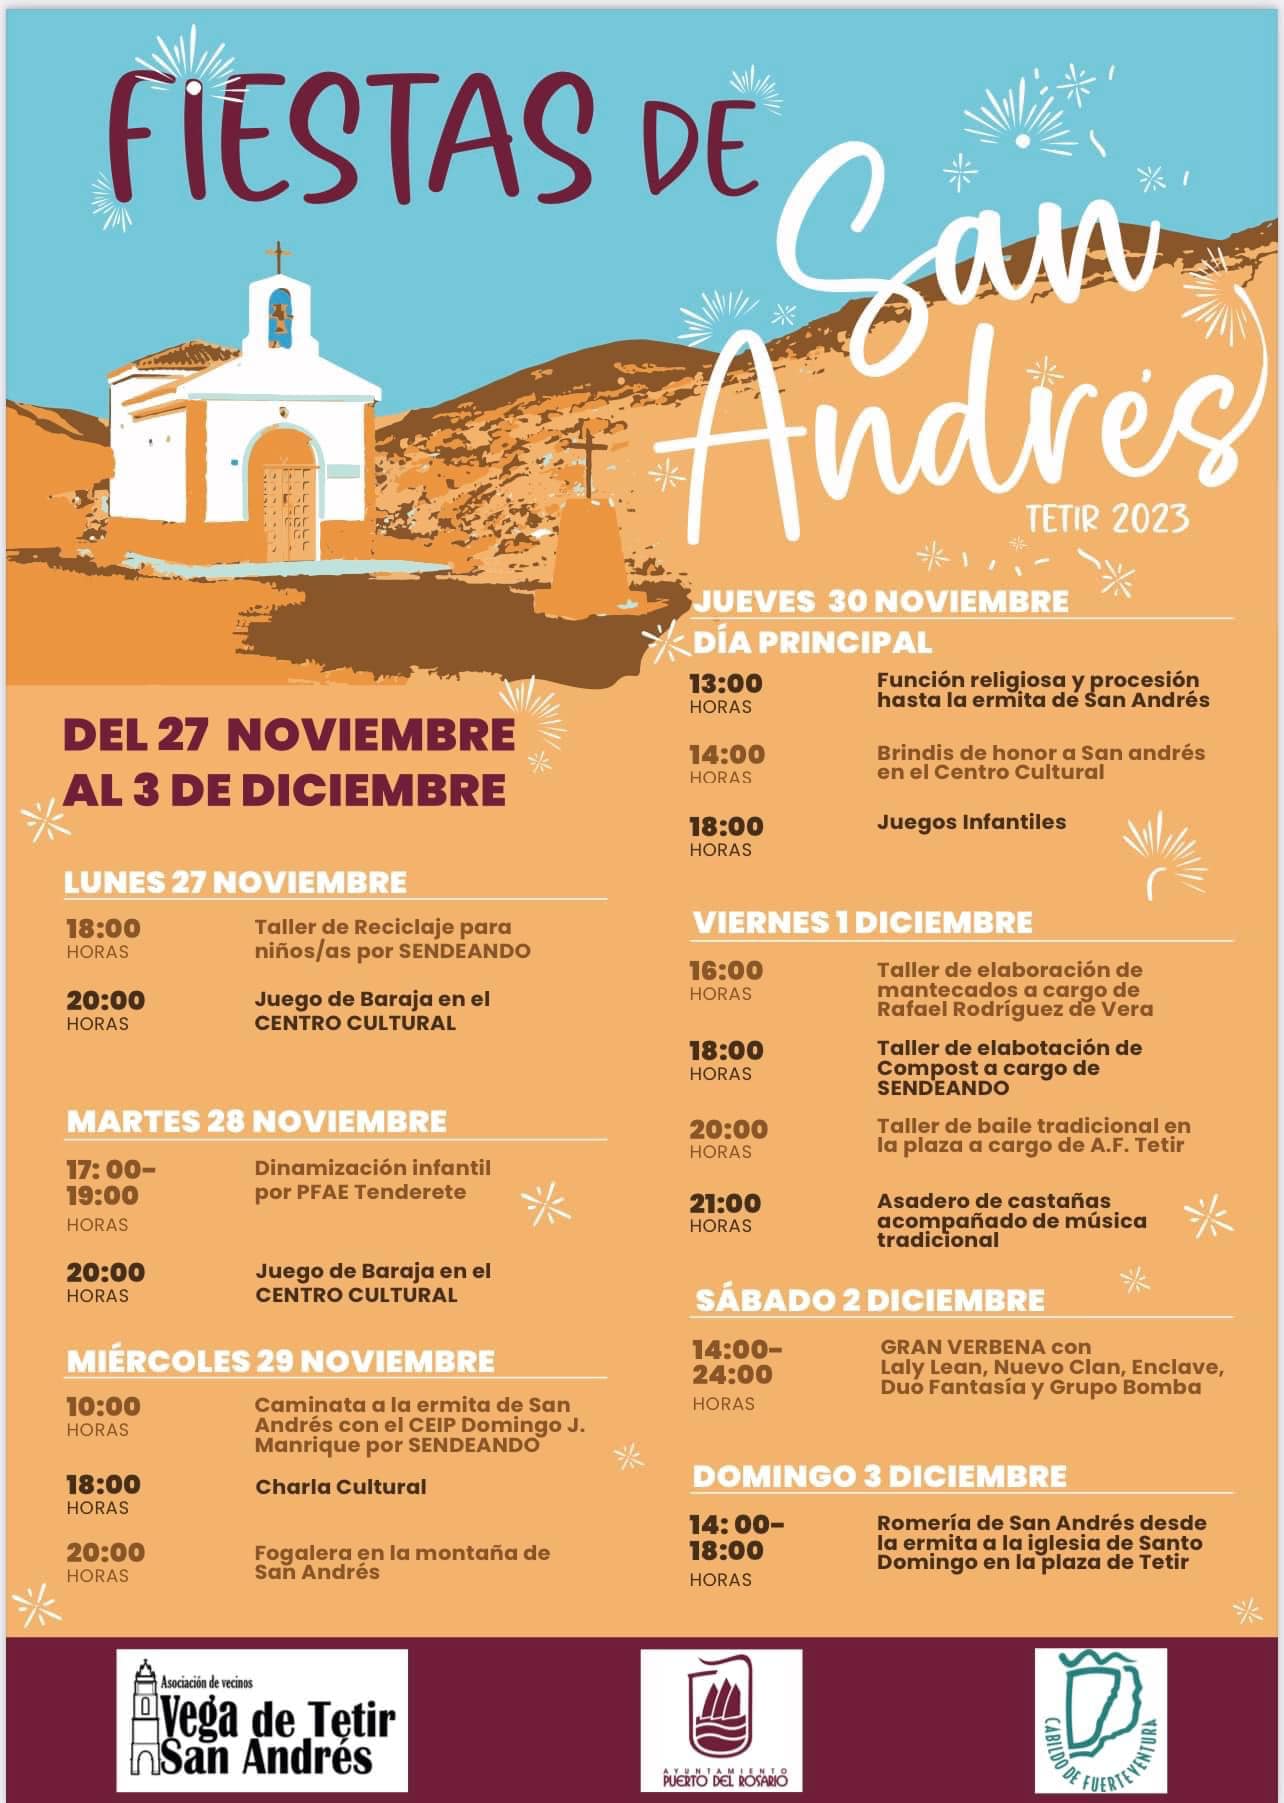 Tetir 2023 en Fuerteventura. Cartel de las fiestas con las fechas y horarios